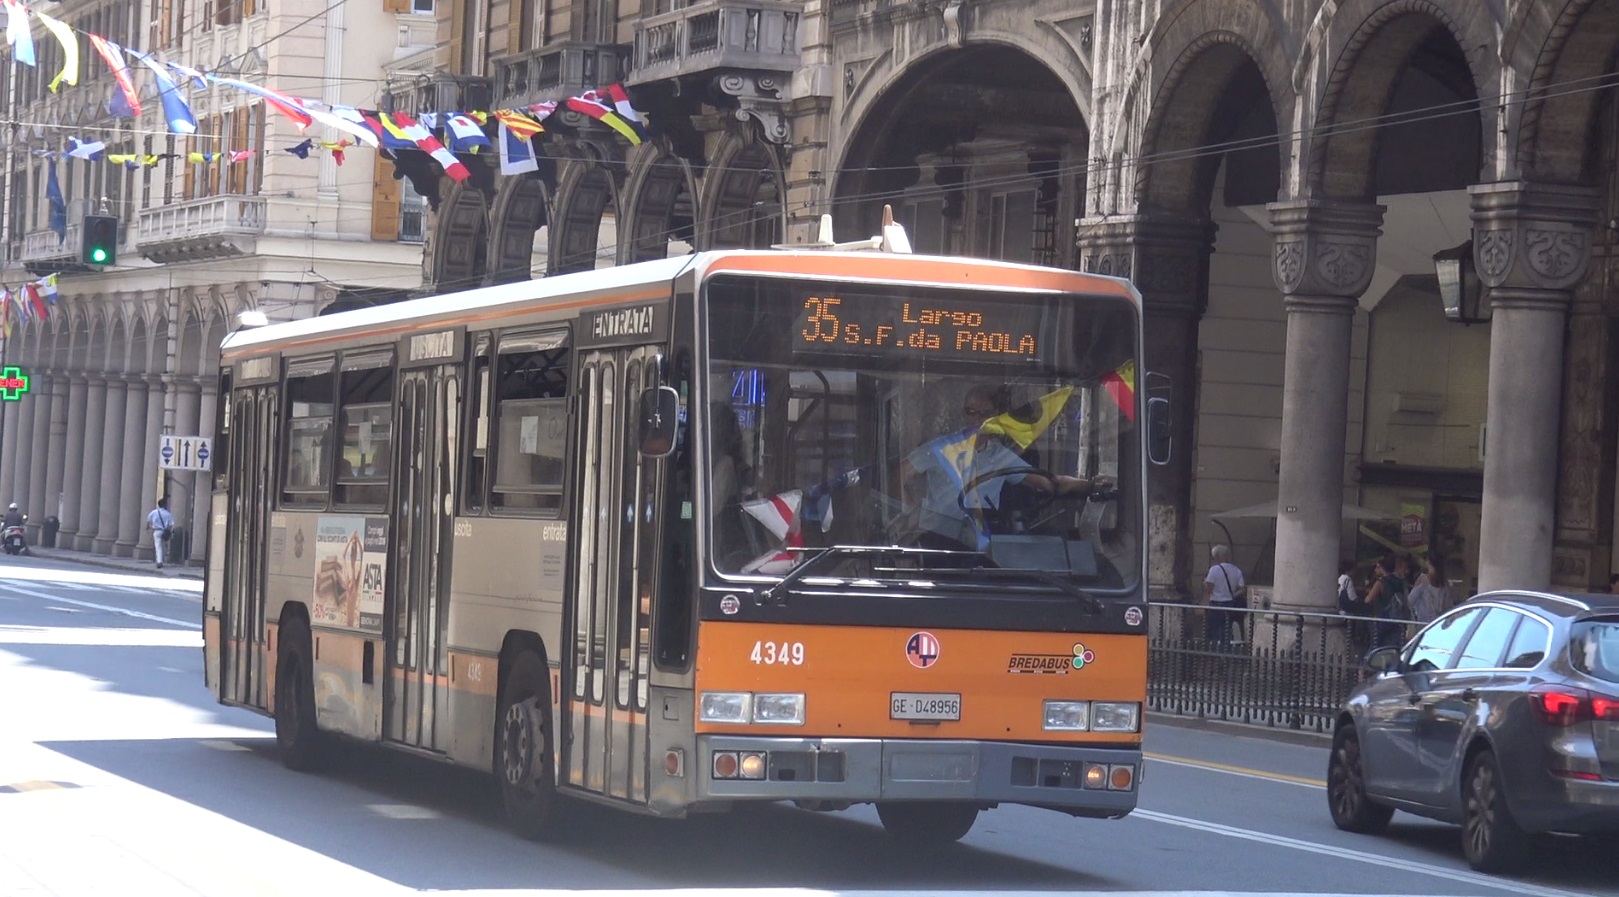 Autobus gratis, il sindaco Bucci: "Almeno fino a lunedì prossimo" 